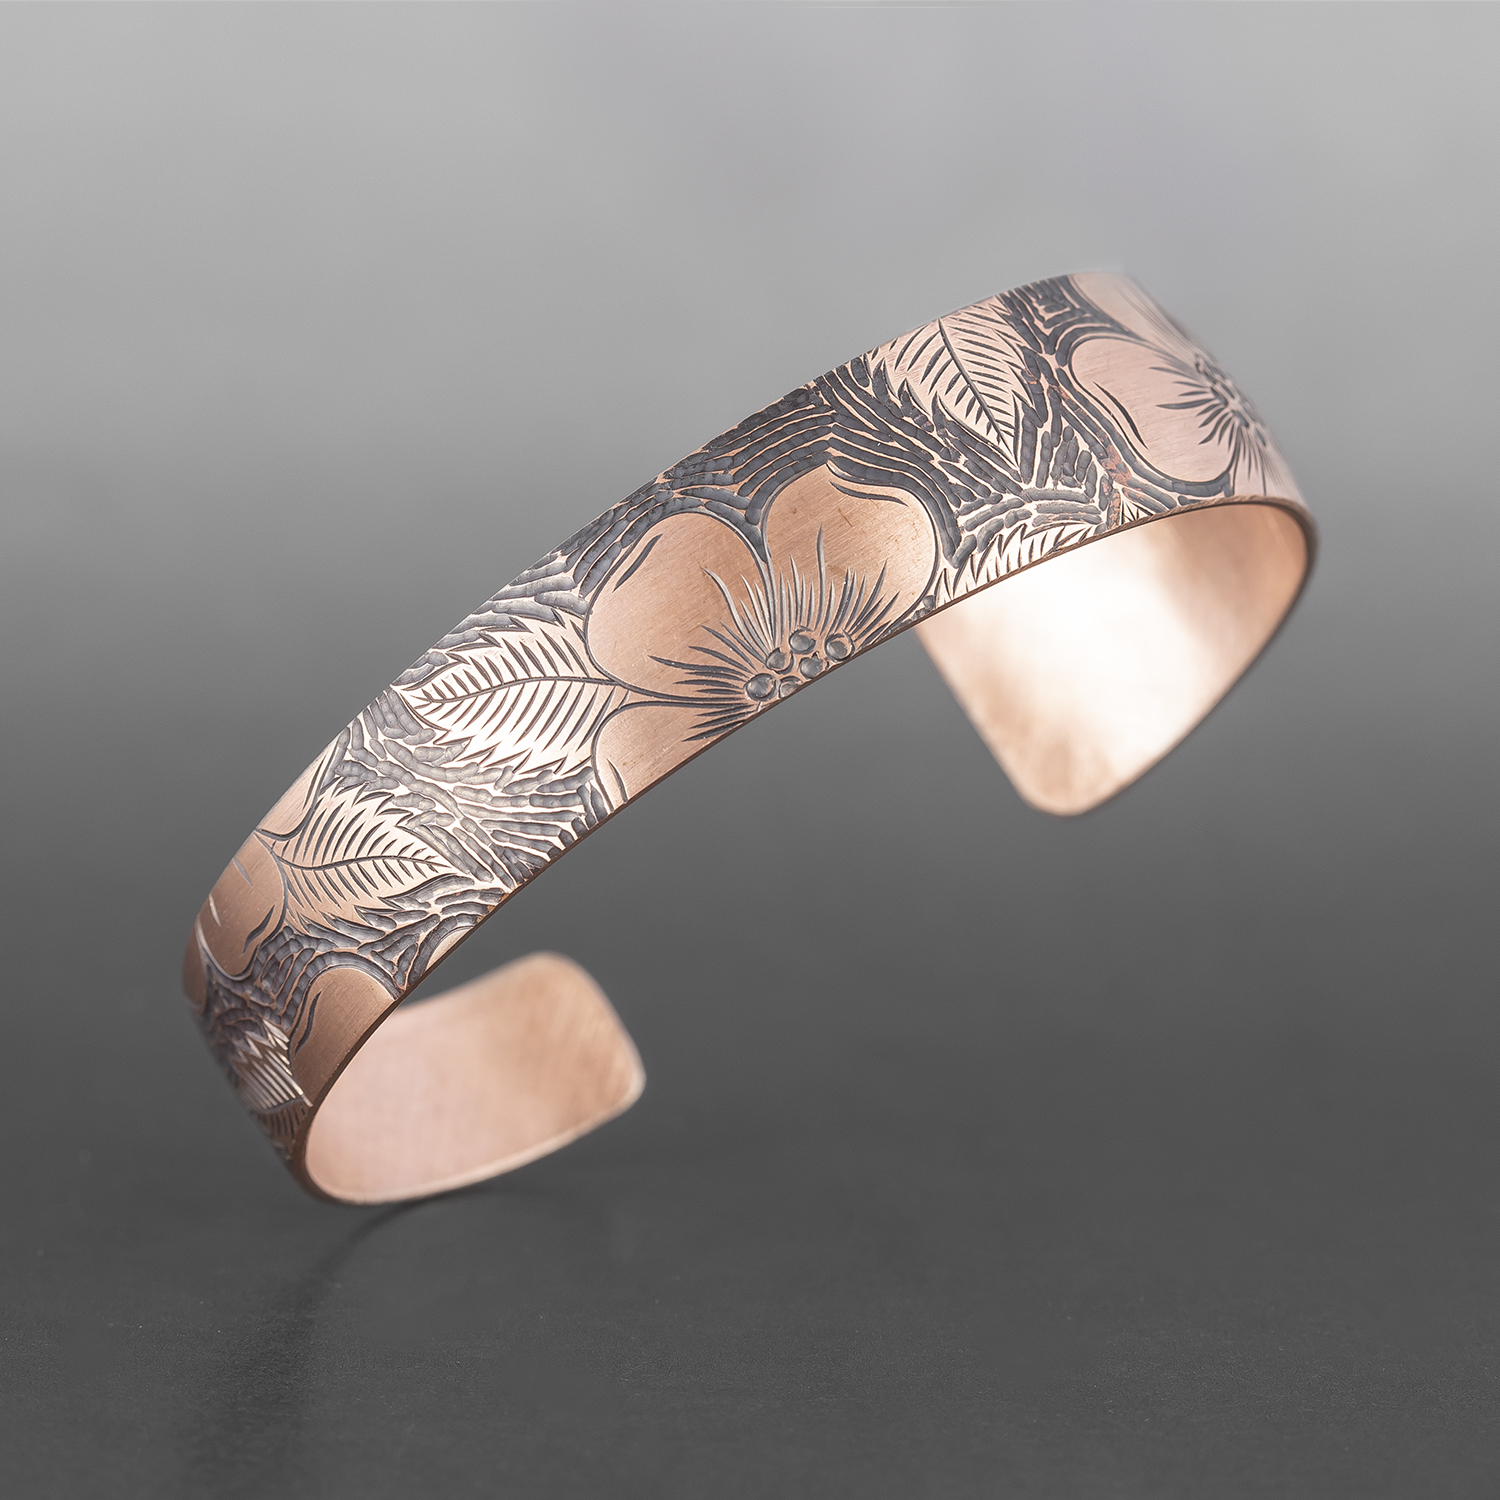 Wildrose Tapered Bracelet
Jennifer Younger
Tlingit
Copper
6" x ½”
$200
